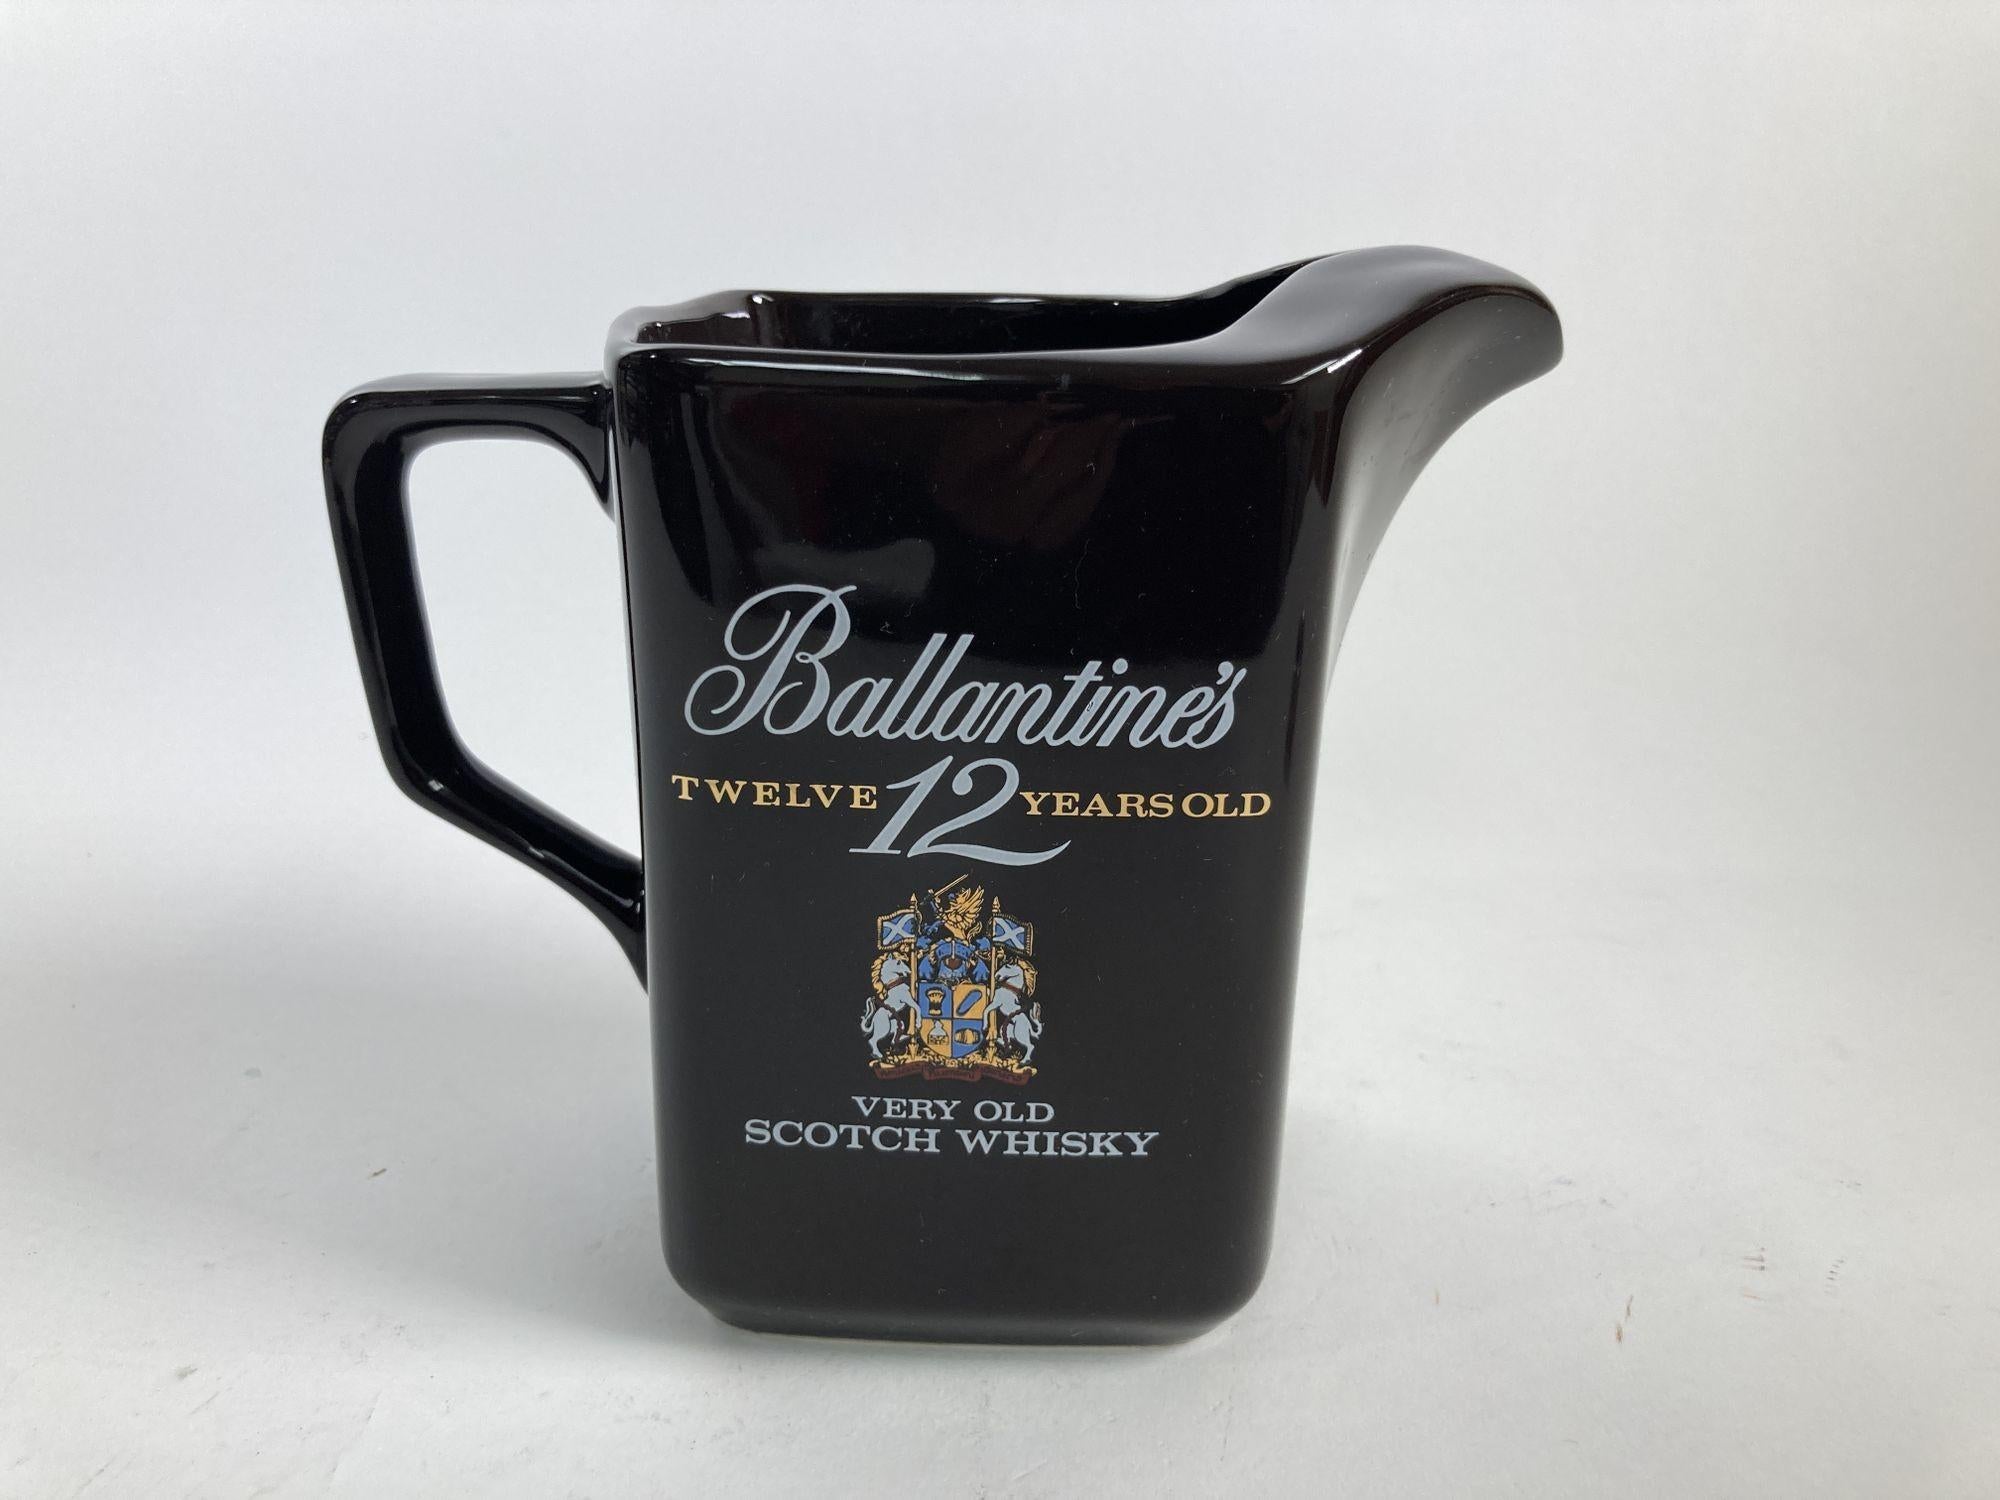 Vieux pichet de collection en céramique noire pour le whisky Ballantine's 12 ans d'âge, pichet de bar pub.
Vintage Ballantine's pub pub pitcher, water Jug, ceramic jar, water Jar, scotch whisky.
Ces pichets en céramique à collectionner étaient